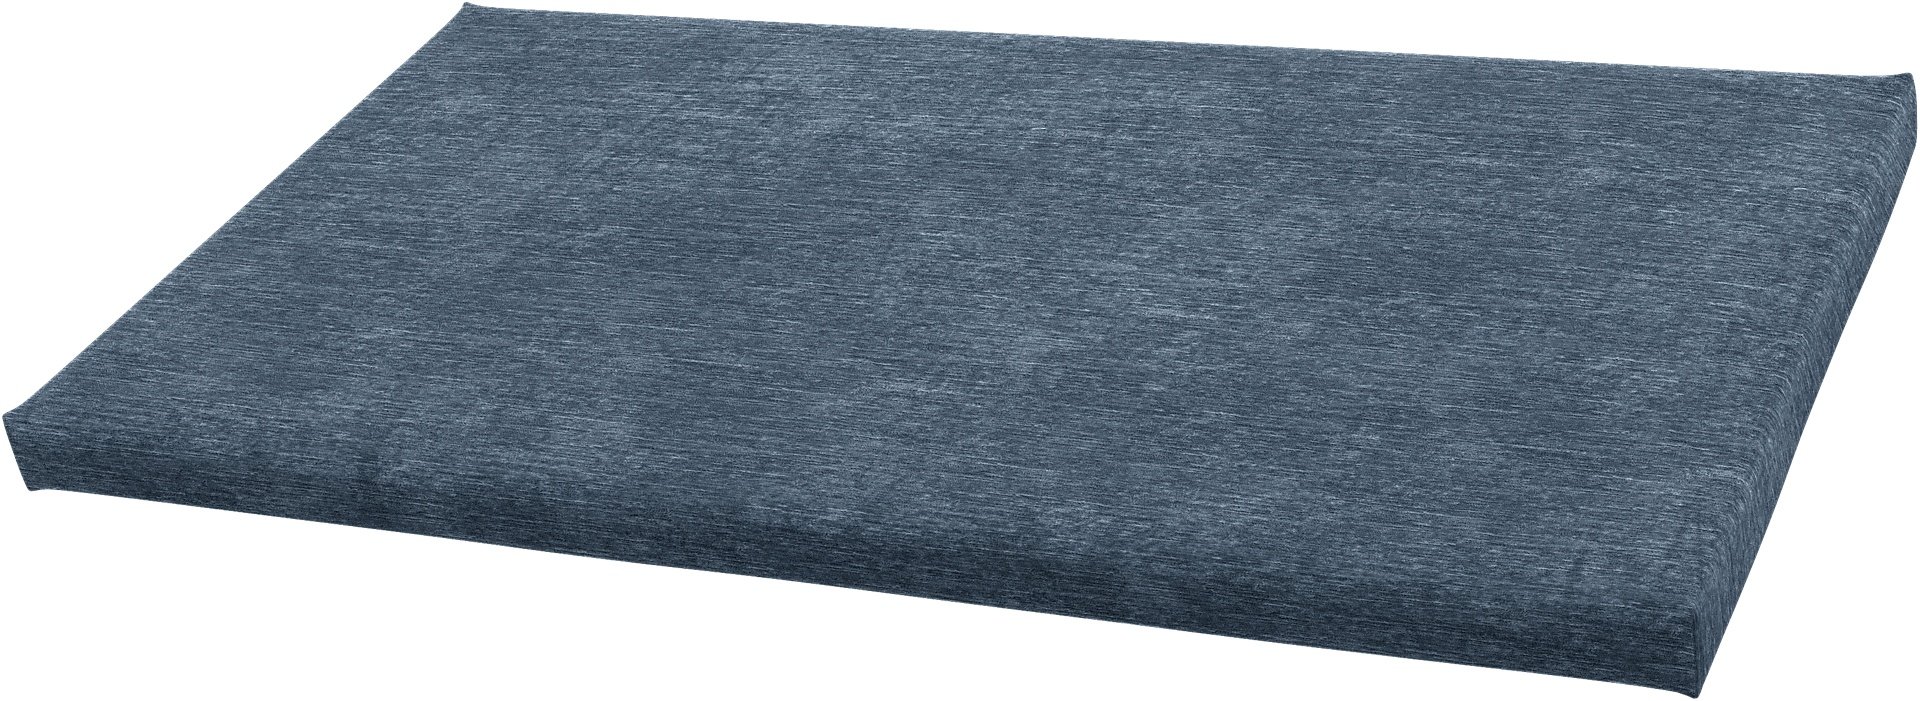 IKEA - Bankkamrat Cushion Cover 90x50x3,5 cm , Mineral Blue, Velvet - Bemz